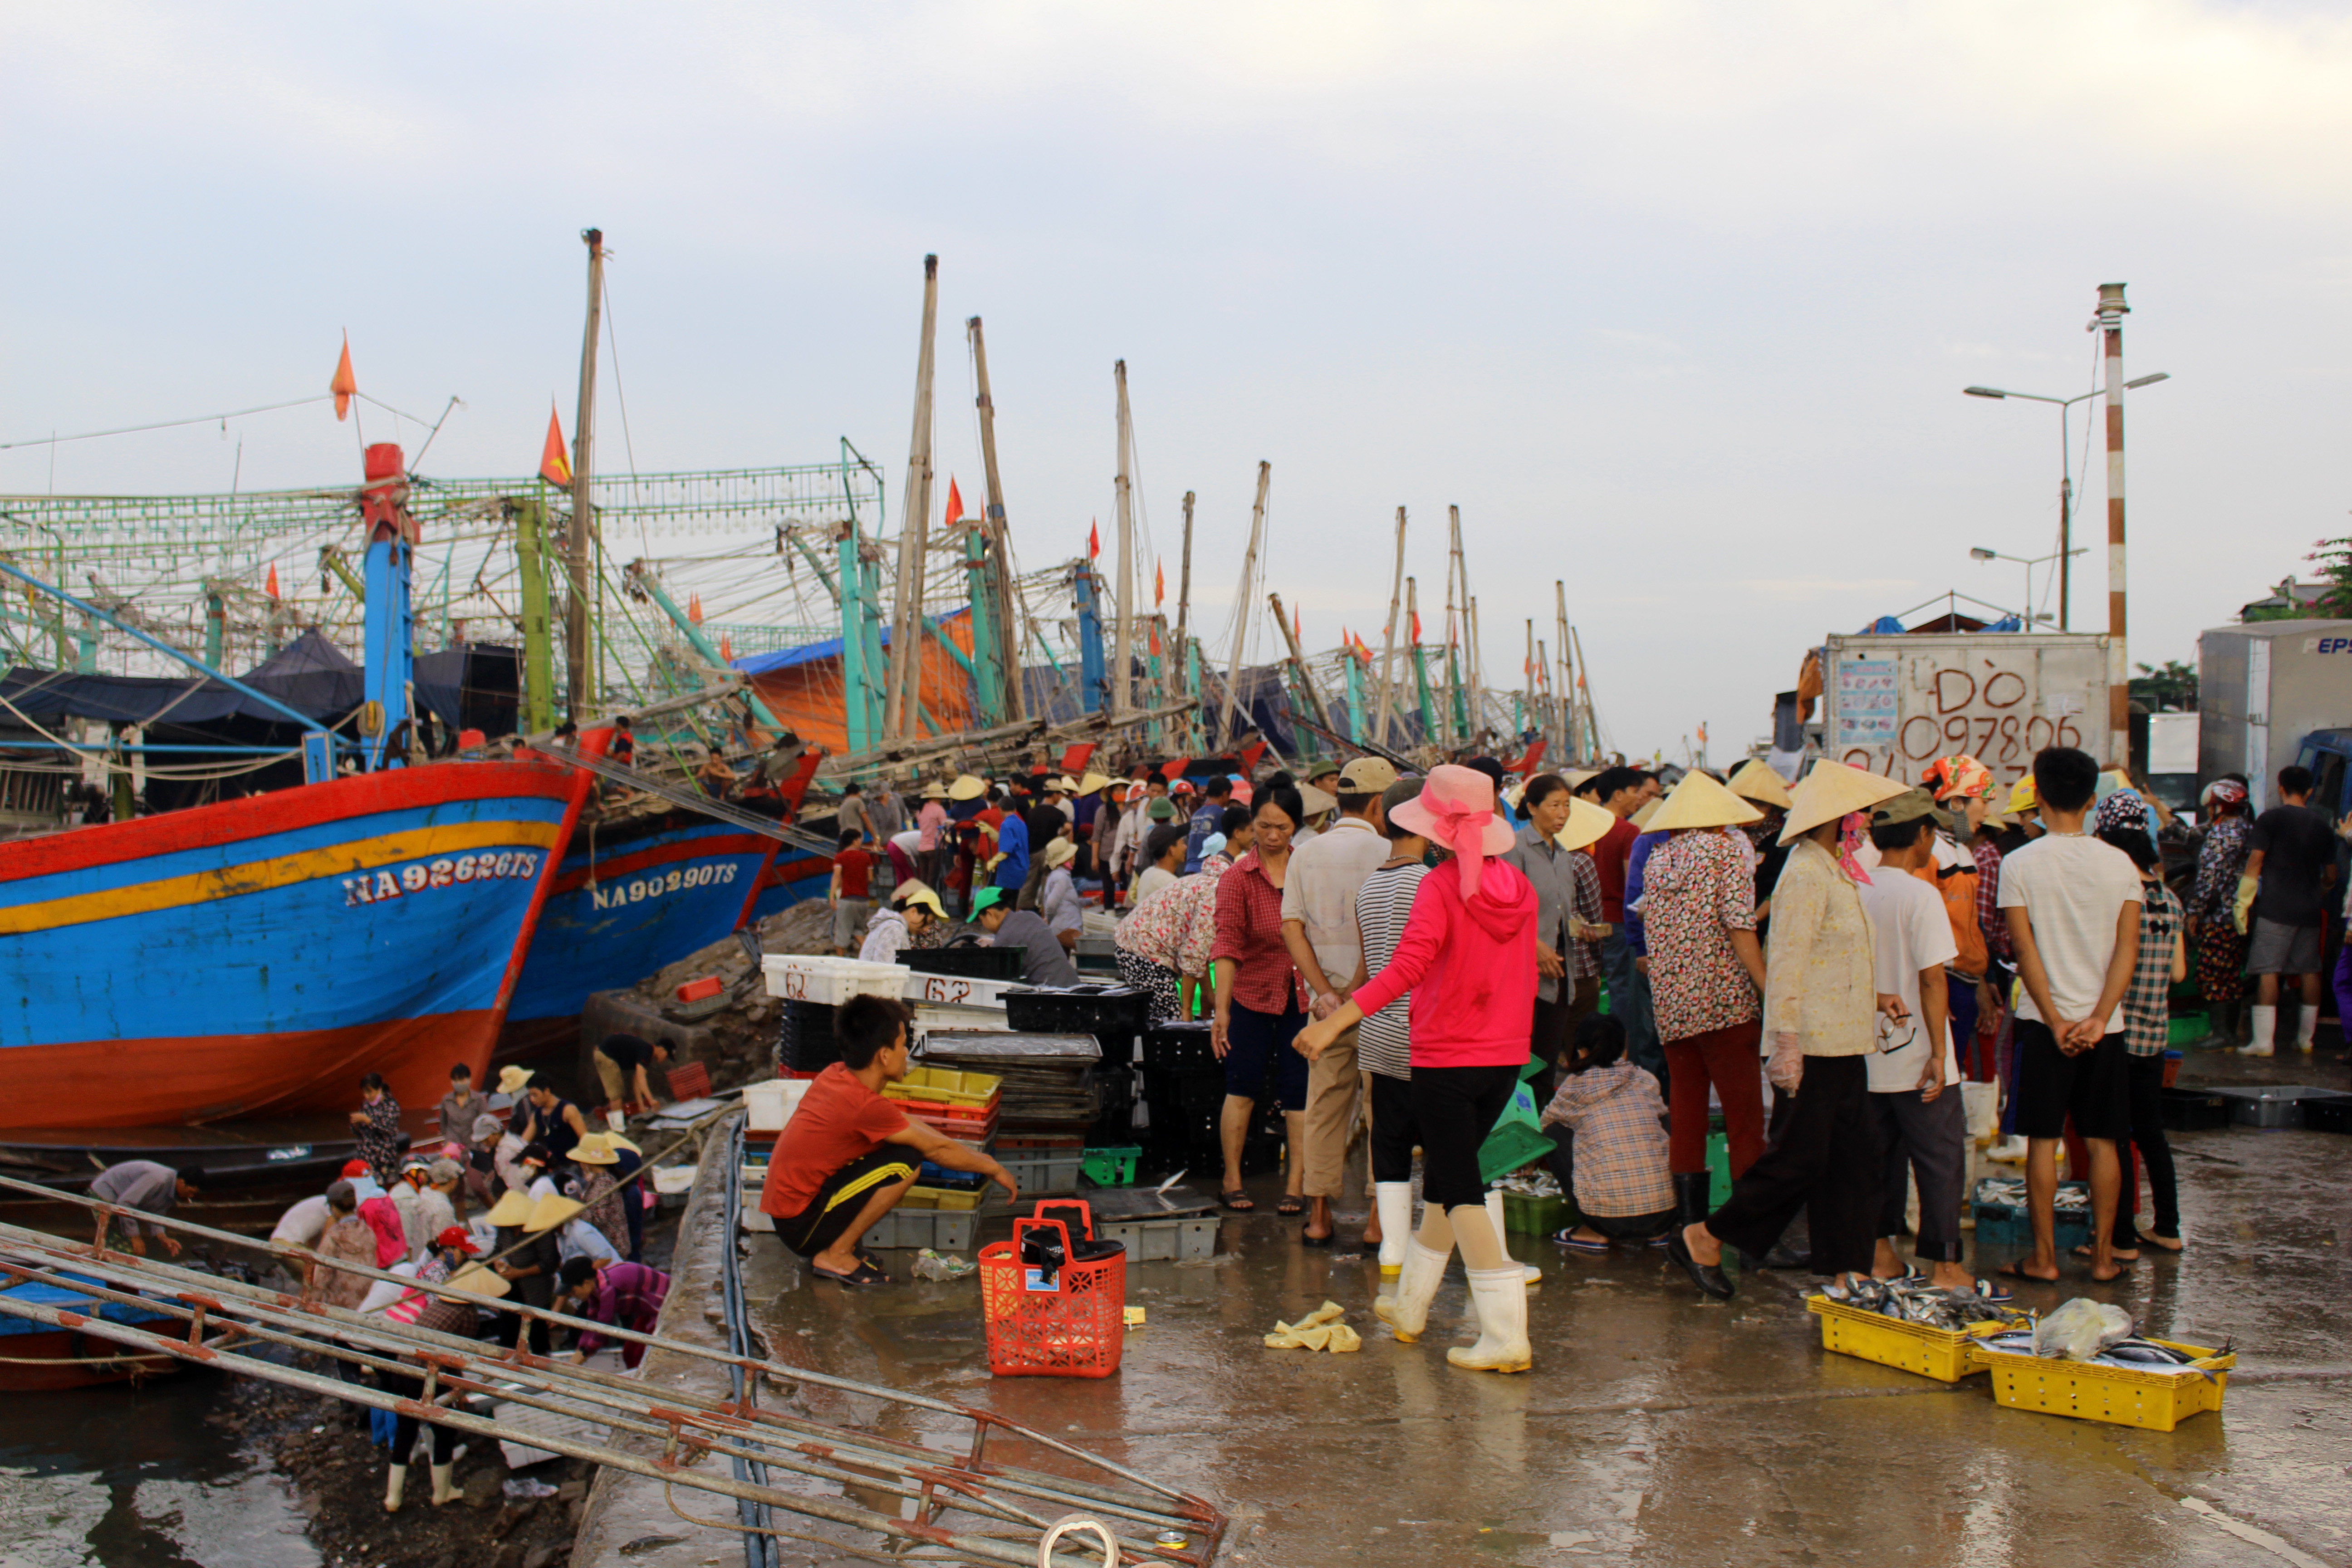 Quỳnh Lưu co gần 1.200 phương tiện tàu cá, trong đó có khoảng 700 tàu có công suất từ 90 CV trở lên. Năm 2020, toàn huyện phấn đấu khai thác đạt sản lượng hơn 74.000 tấn hải sản.